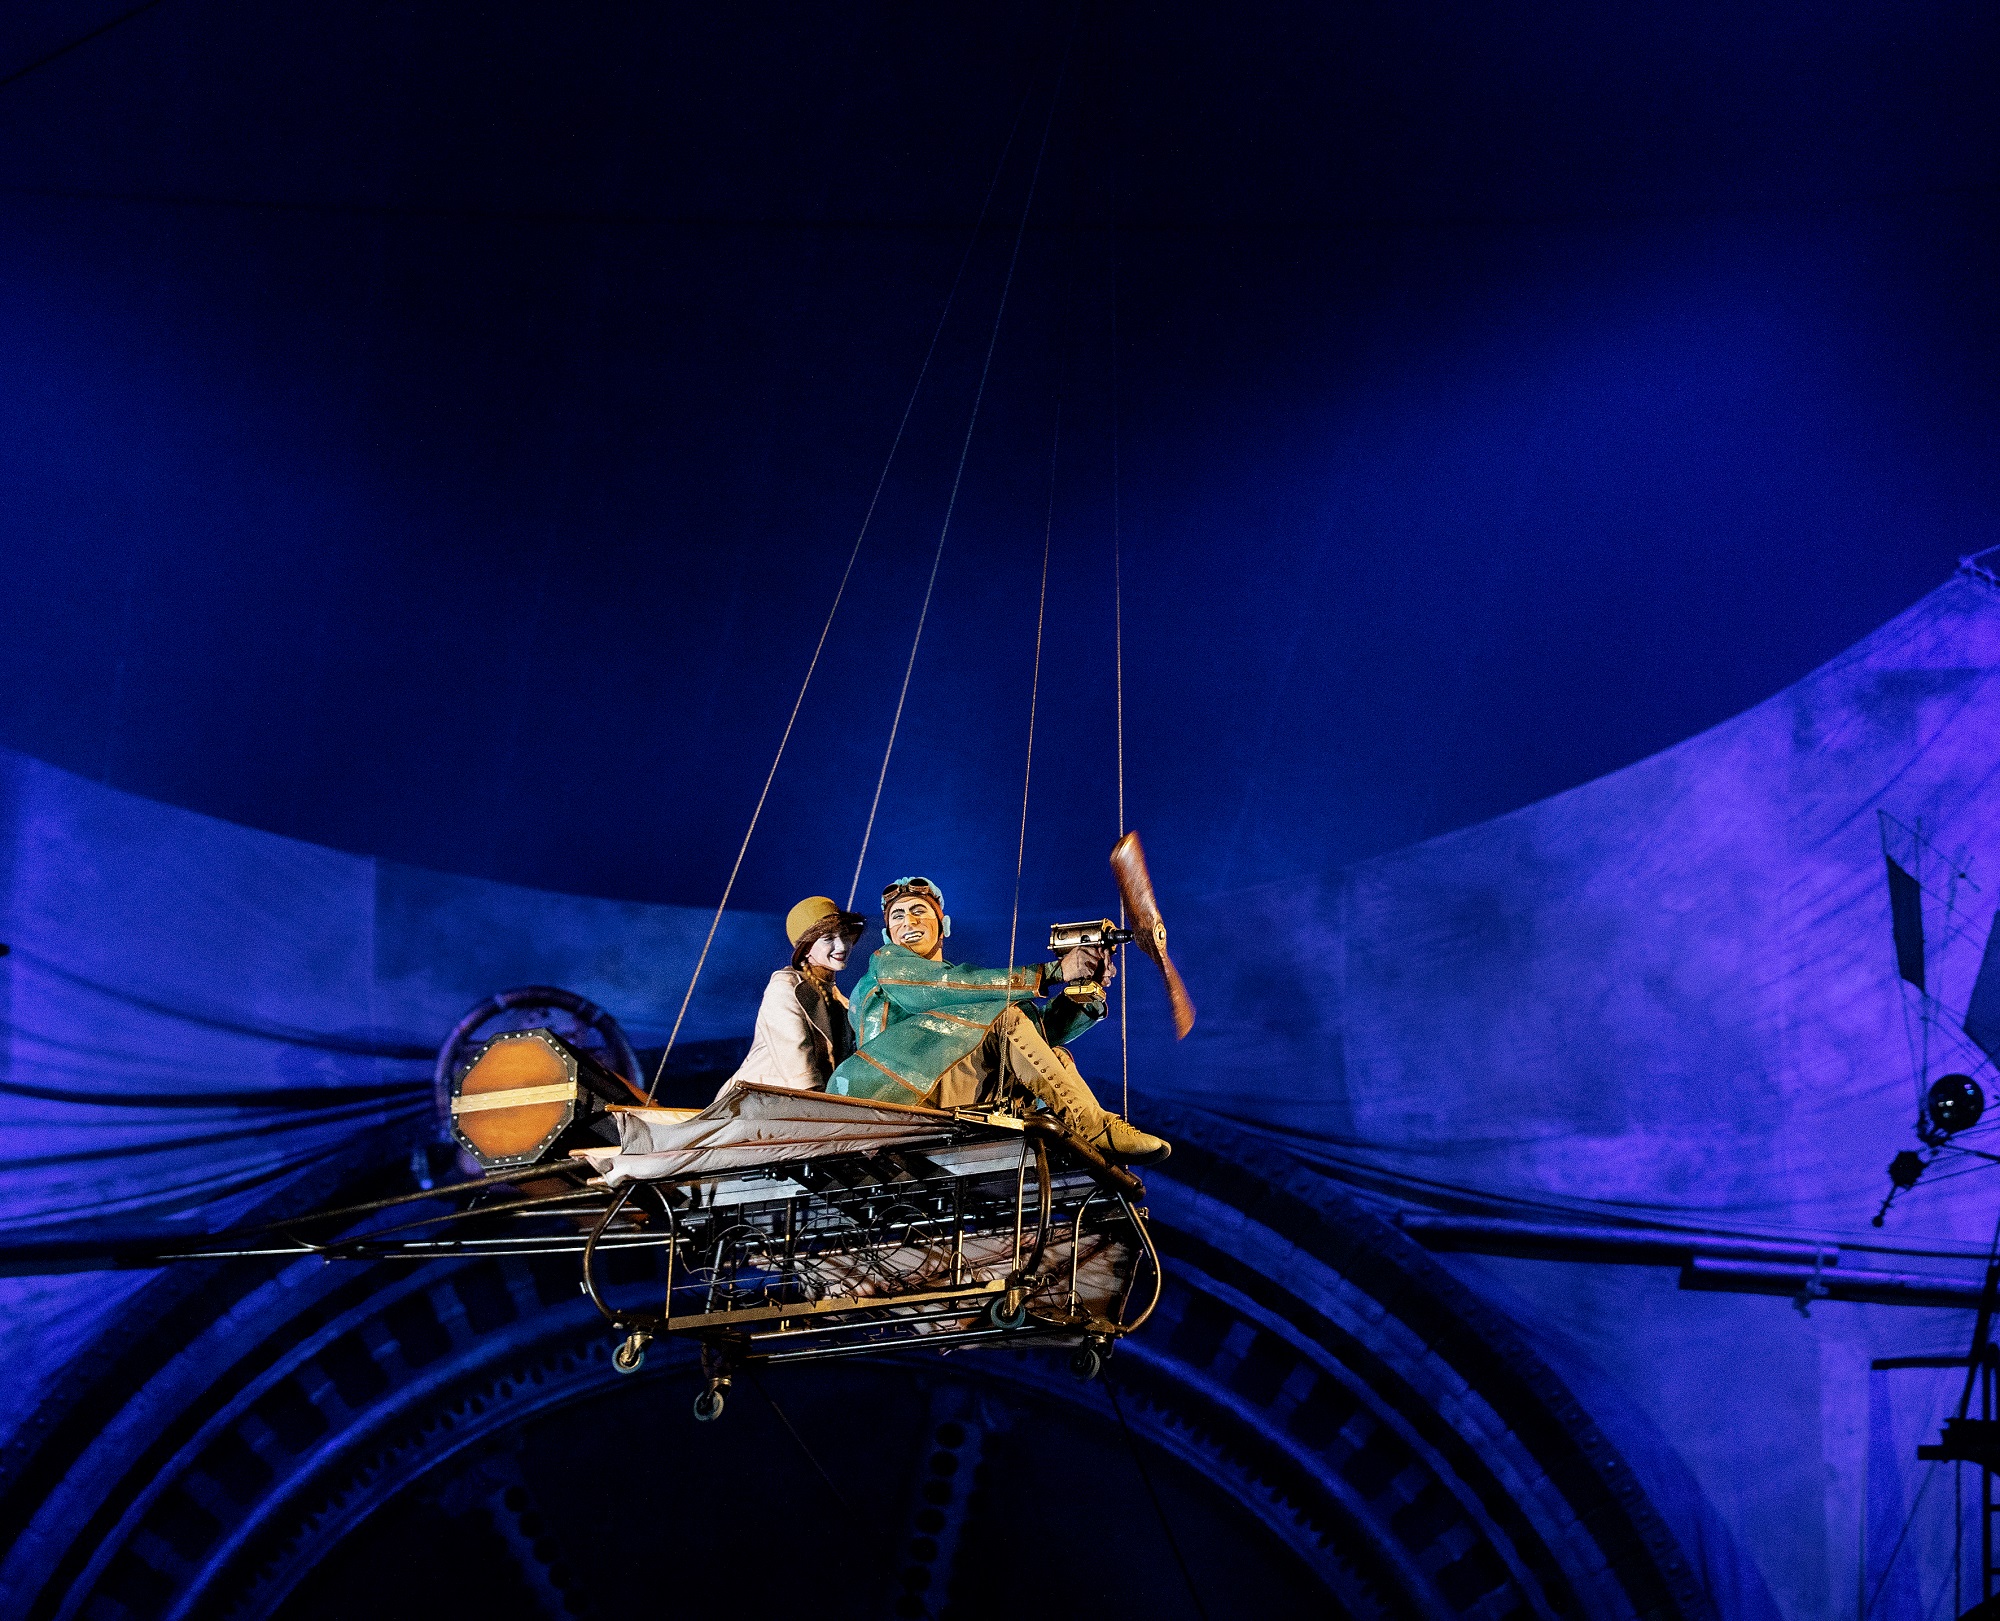 Le Cirque du Soleil jouera « Kurios - Cabinet des curiosités », sa 35e production, à partir de novembre, à Chatou (Yvelines). Mélanie Bahuon